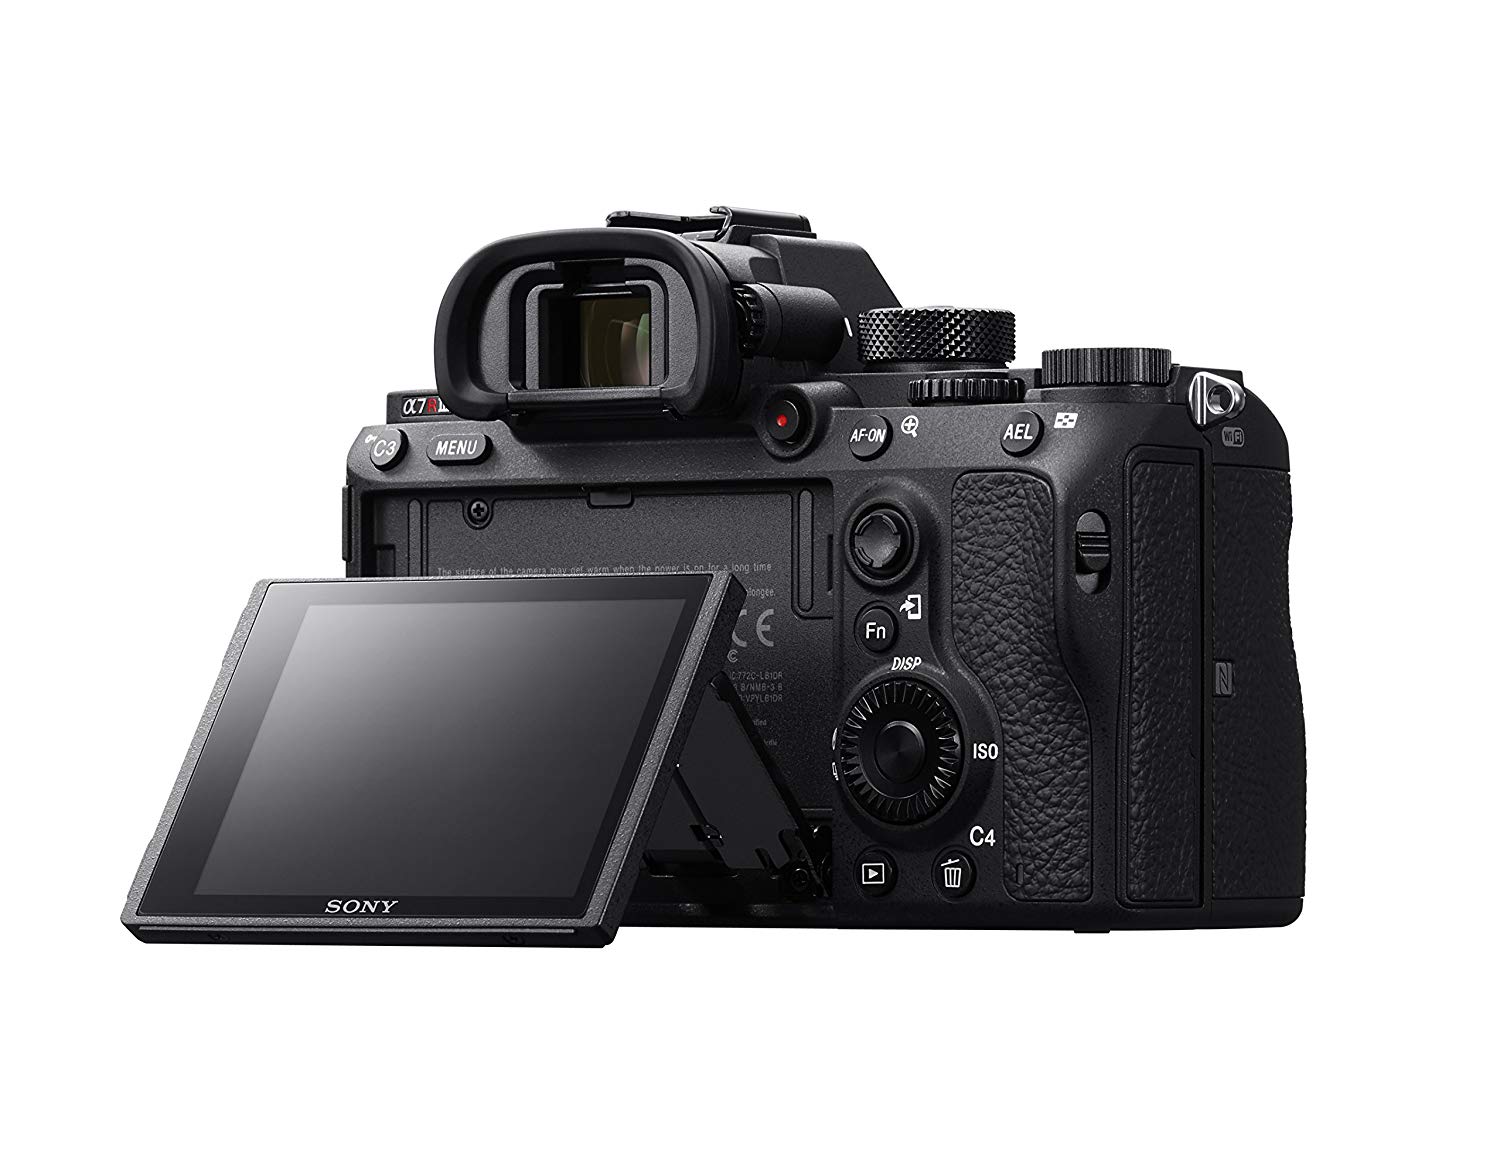 Nikon D850 vs Sony A7R III Price Comparison image 